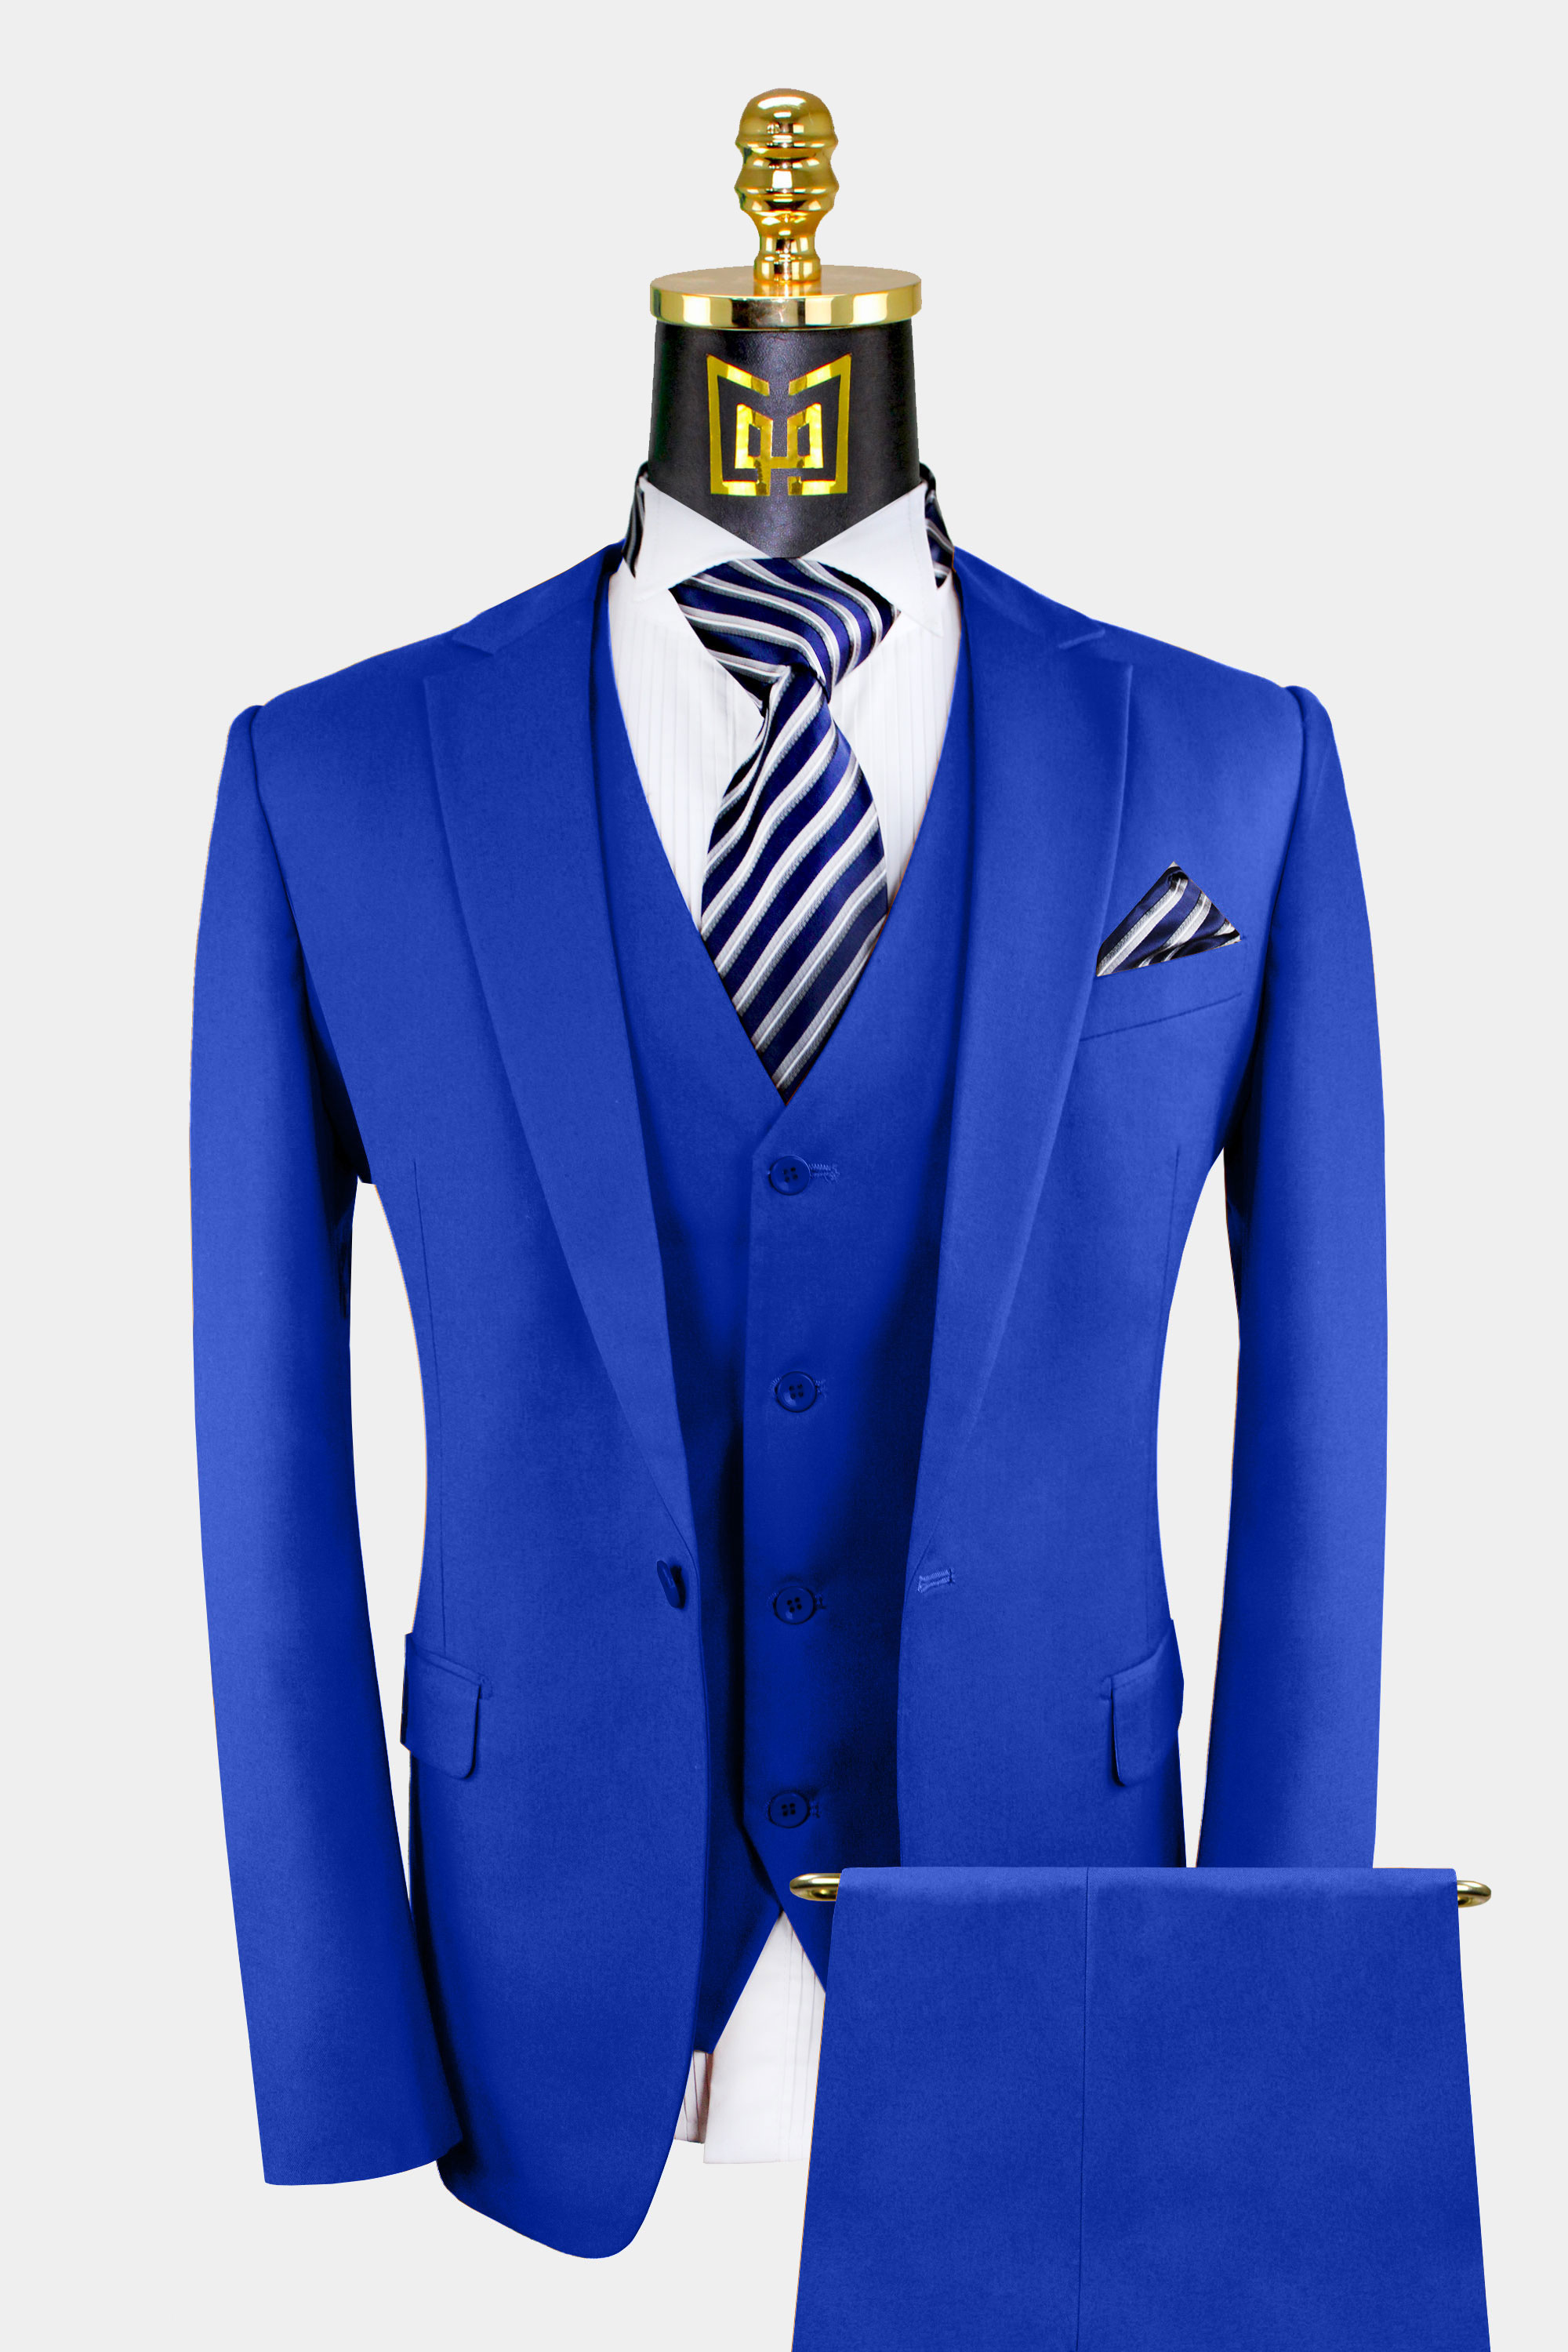 Classic 3 Piece Royal Blue Suit